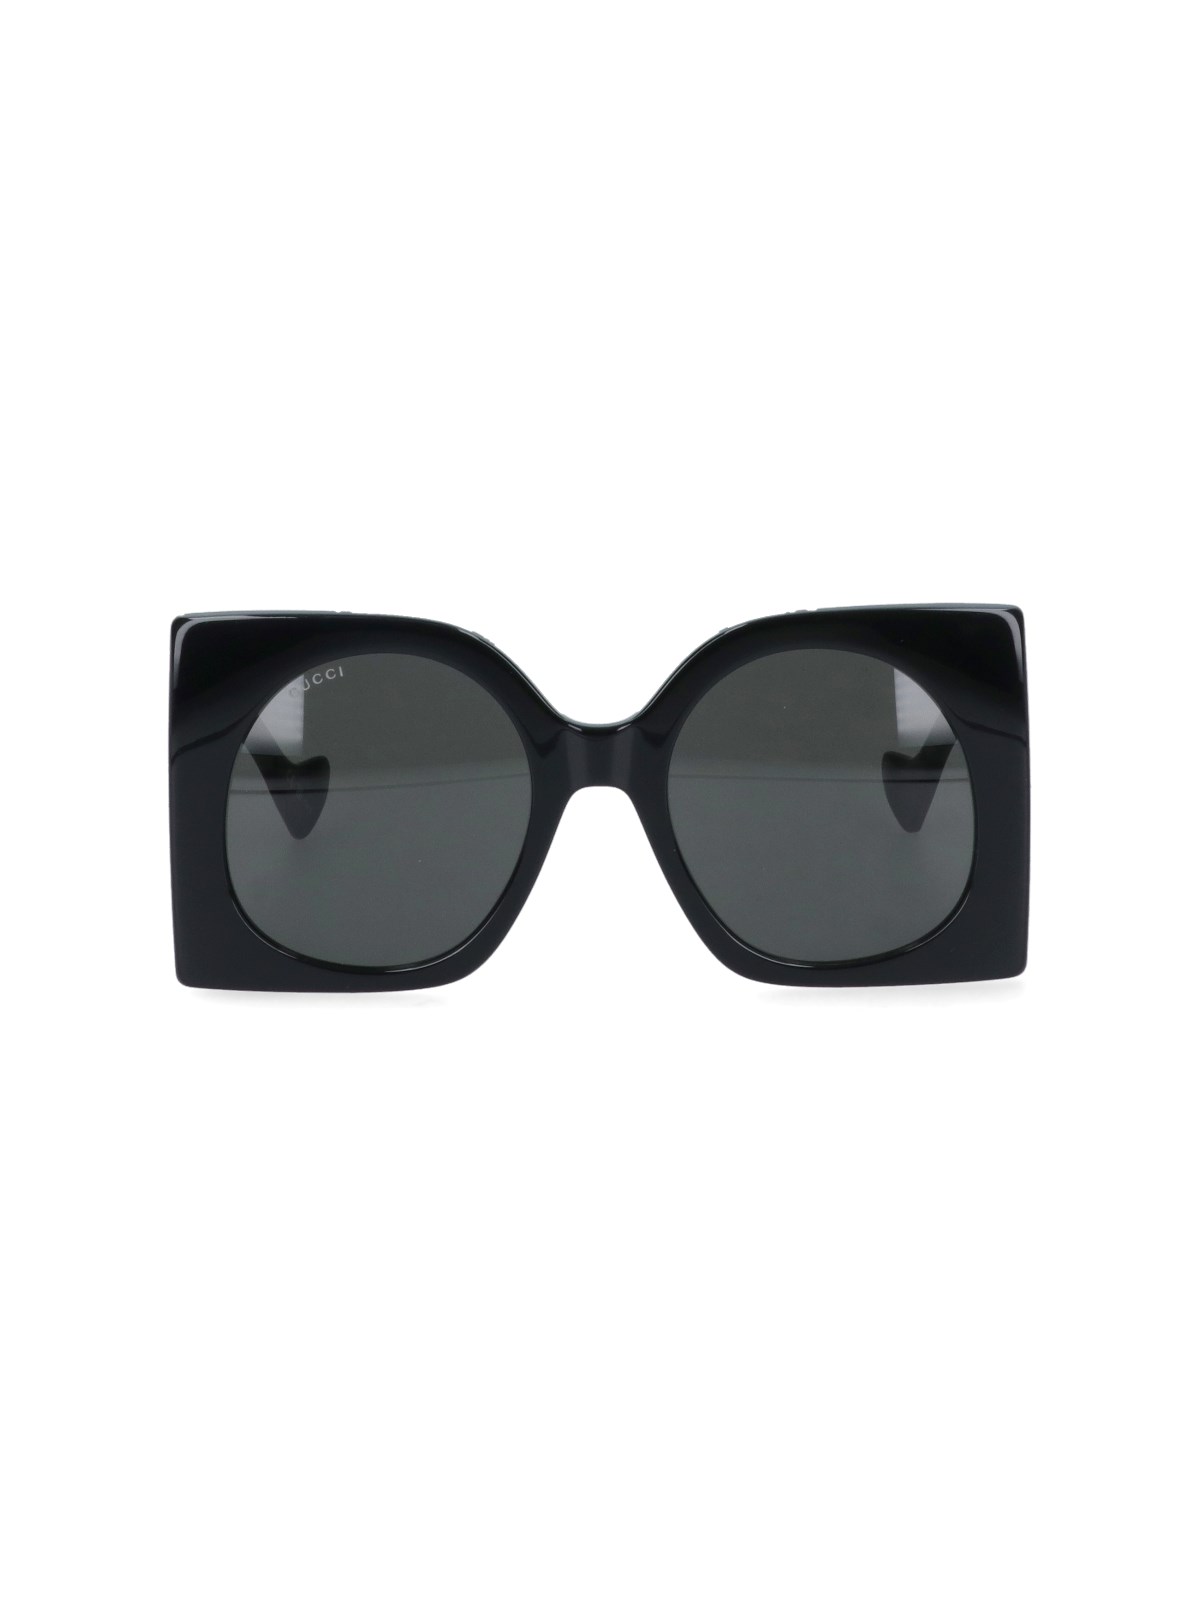 Gucci Square Sunglasses In Nero